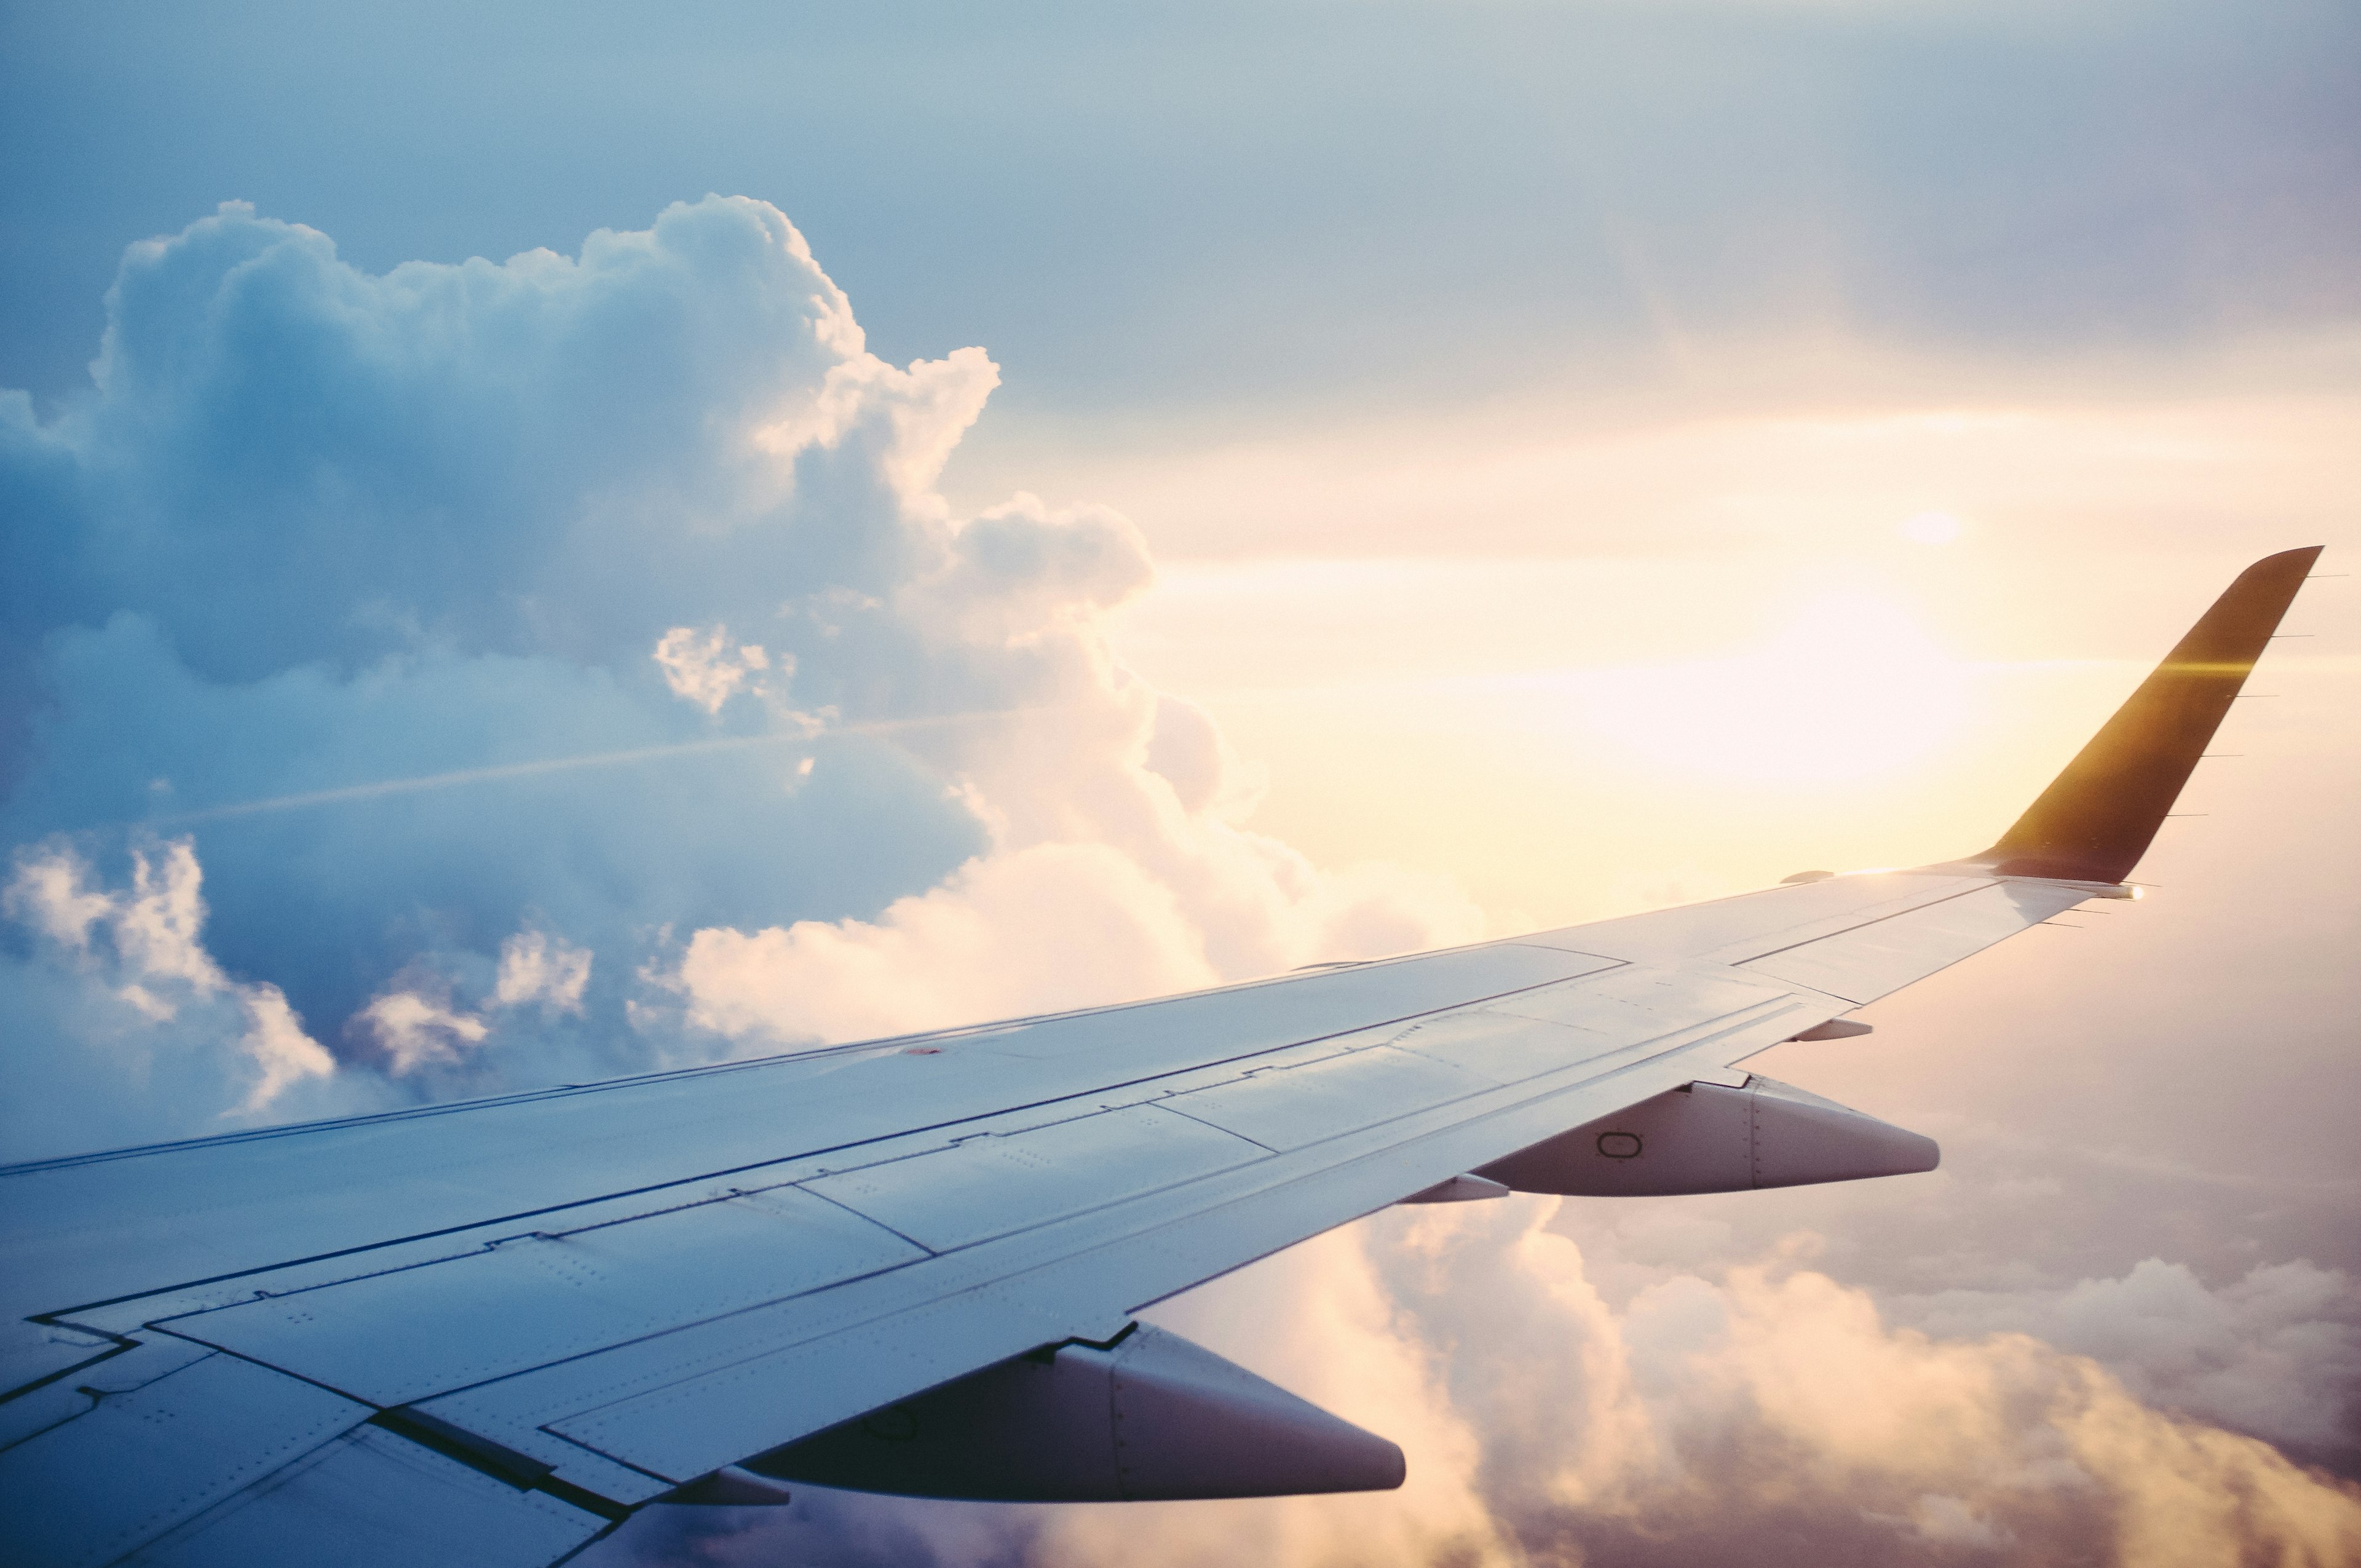 nella foto l'ala di un aereo - nell'articolo le informazioni utili e le cose da sapere per viaggiare in egitto